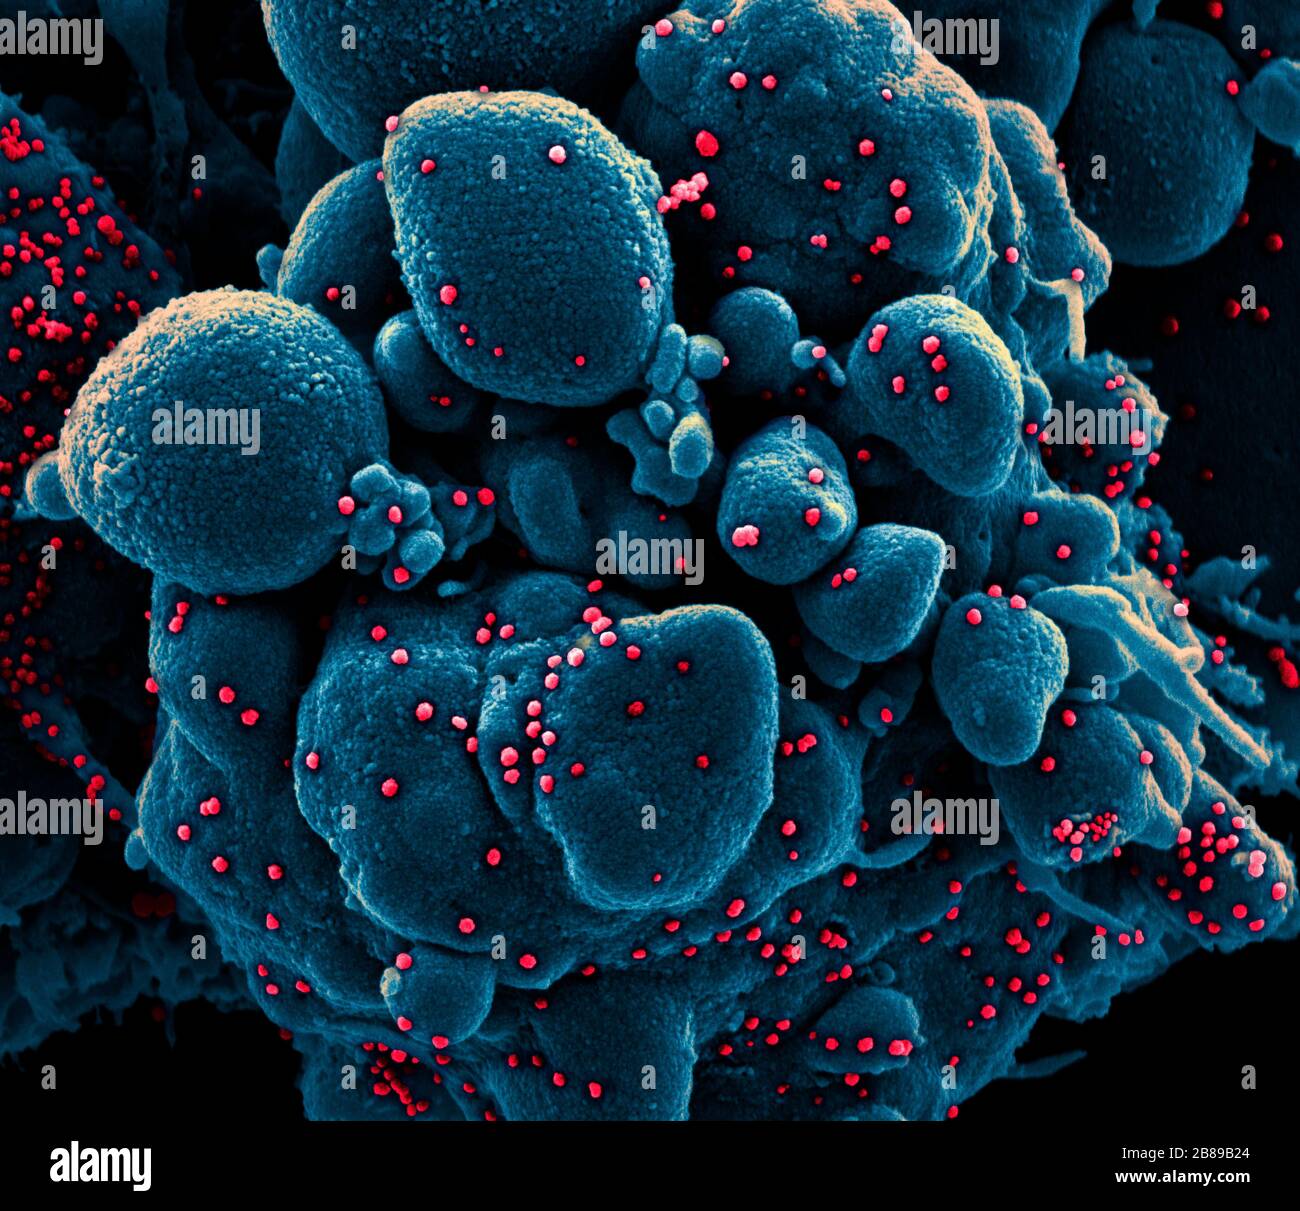 Una micrografia elettronica a trasmissione di COVID-19, nuovo coronavirus, una cellula apoptotica fortemente infettata con particelle di virus SARS-COV-2, isolata da un campione di paziente presso il NIAID Integrated Research Facility 18 marzo 2020 a Fort Detrick, Maryland. Foto Stock